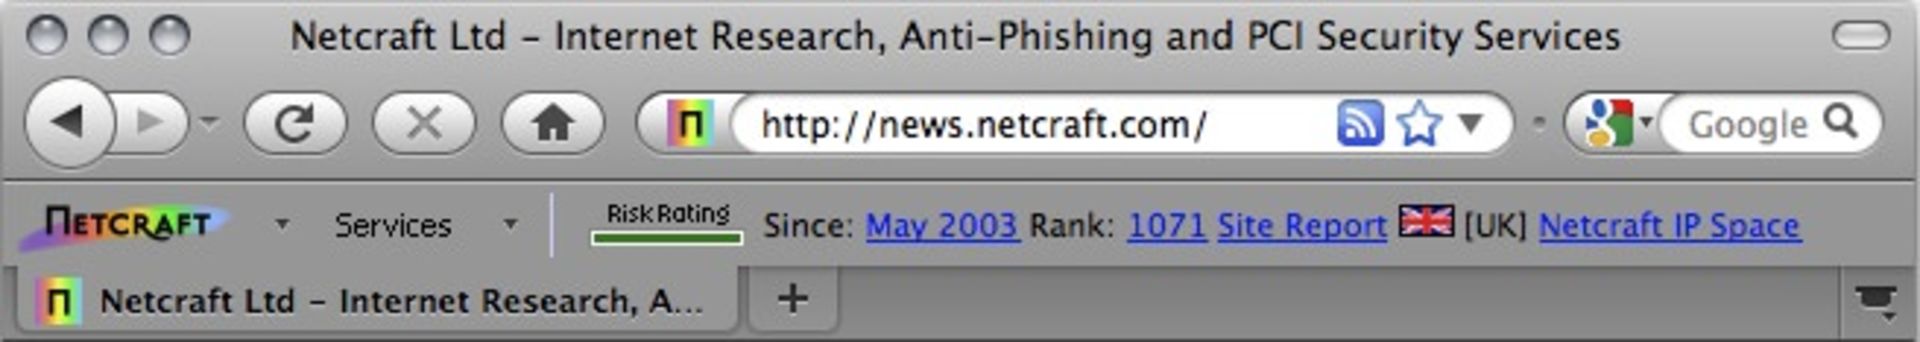 netcraft toolbar